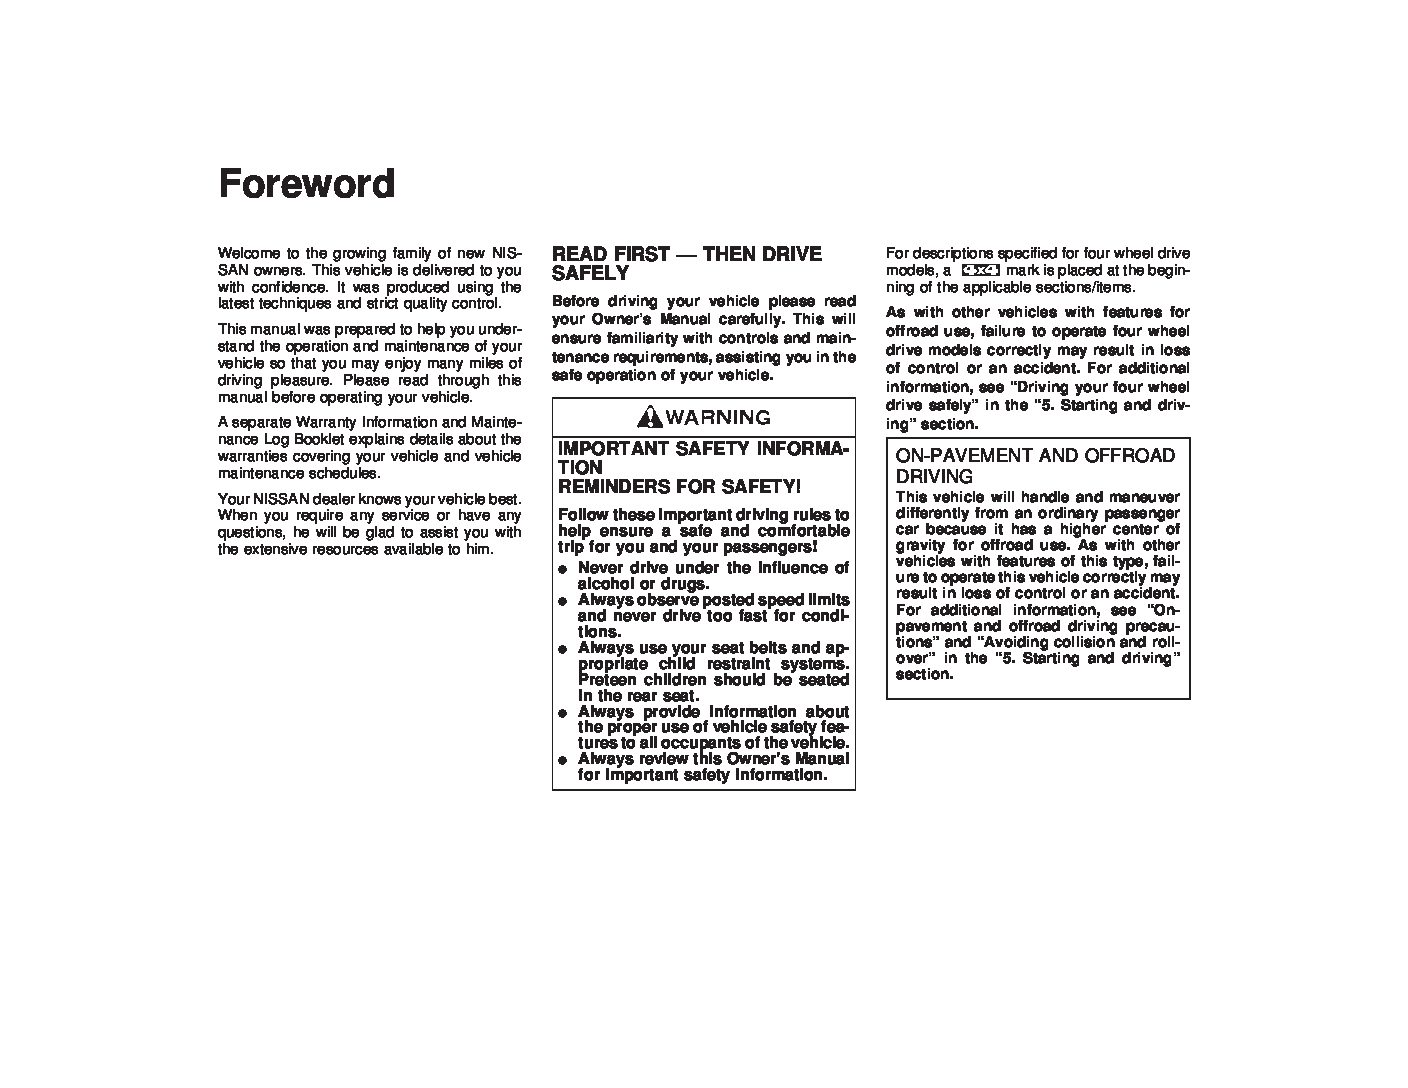 1998 nissan pathfinder repair manual pdf